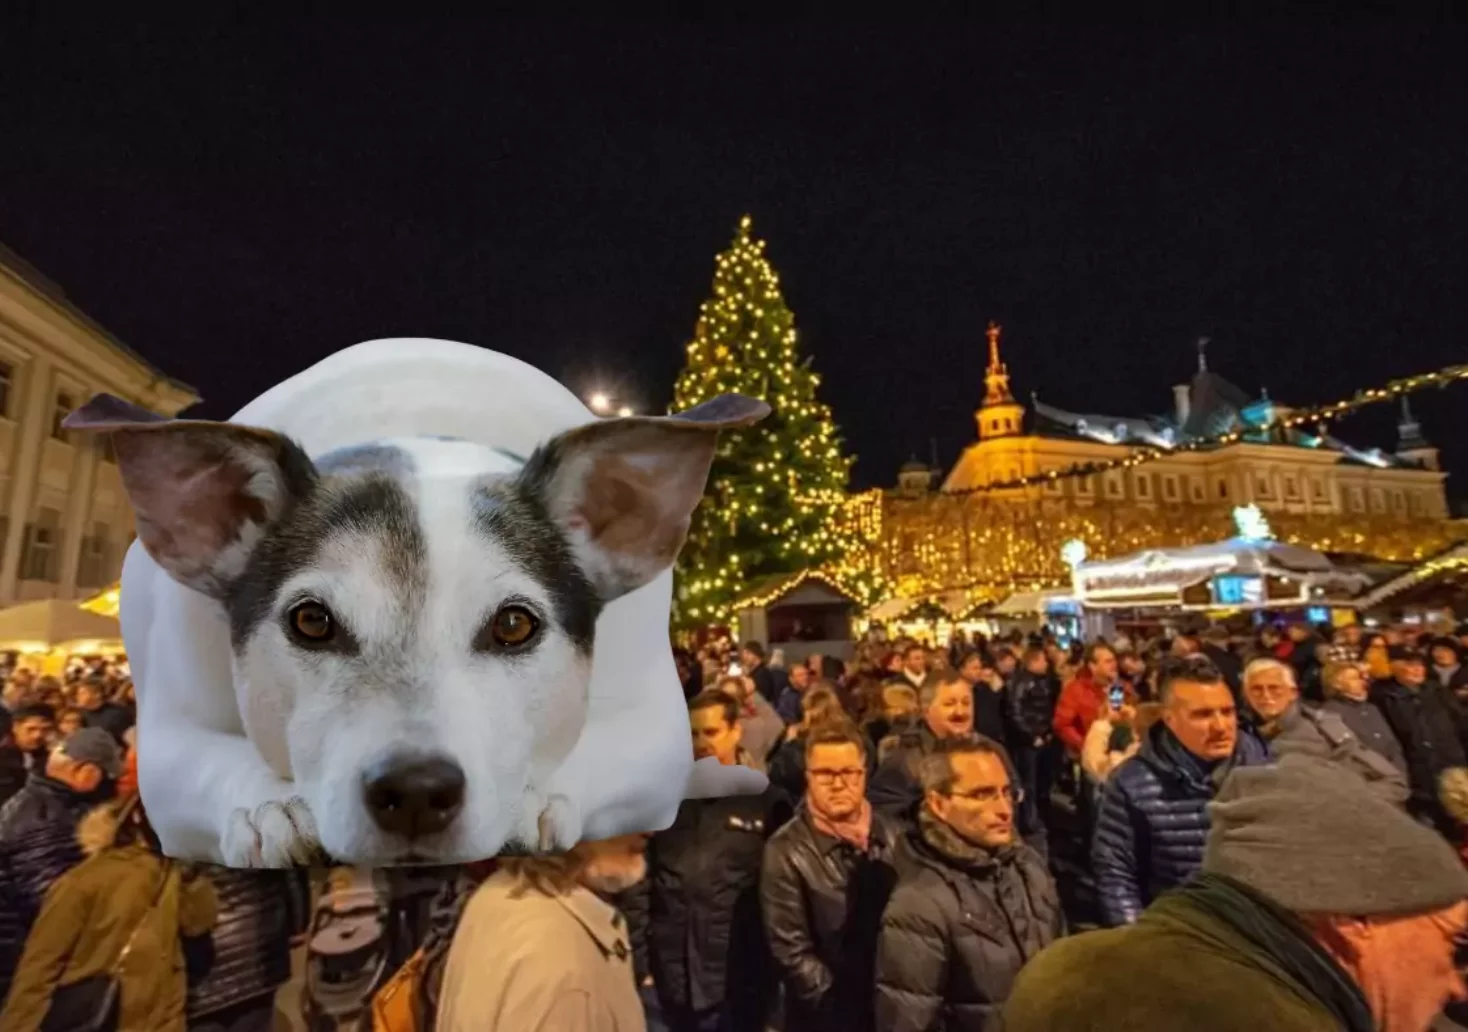 Bild auf 5min.at zeigt viele Menschen auf einem Weihnachtsmarkt und einen Hund.